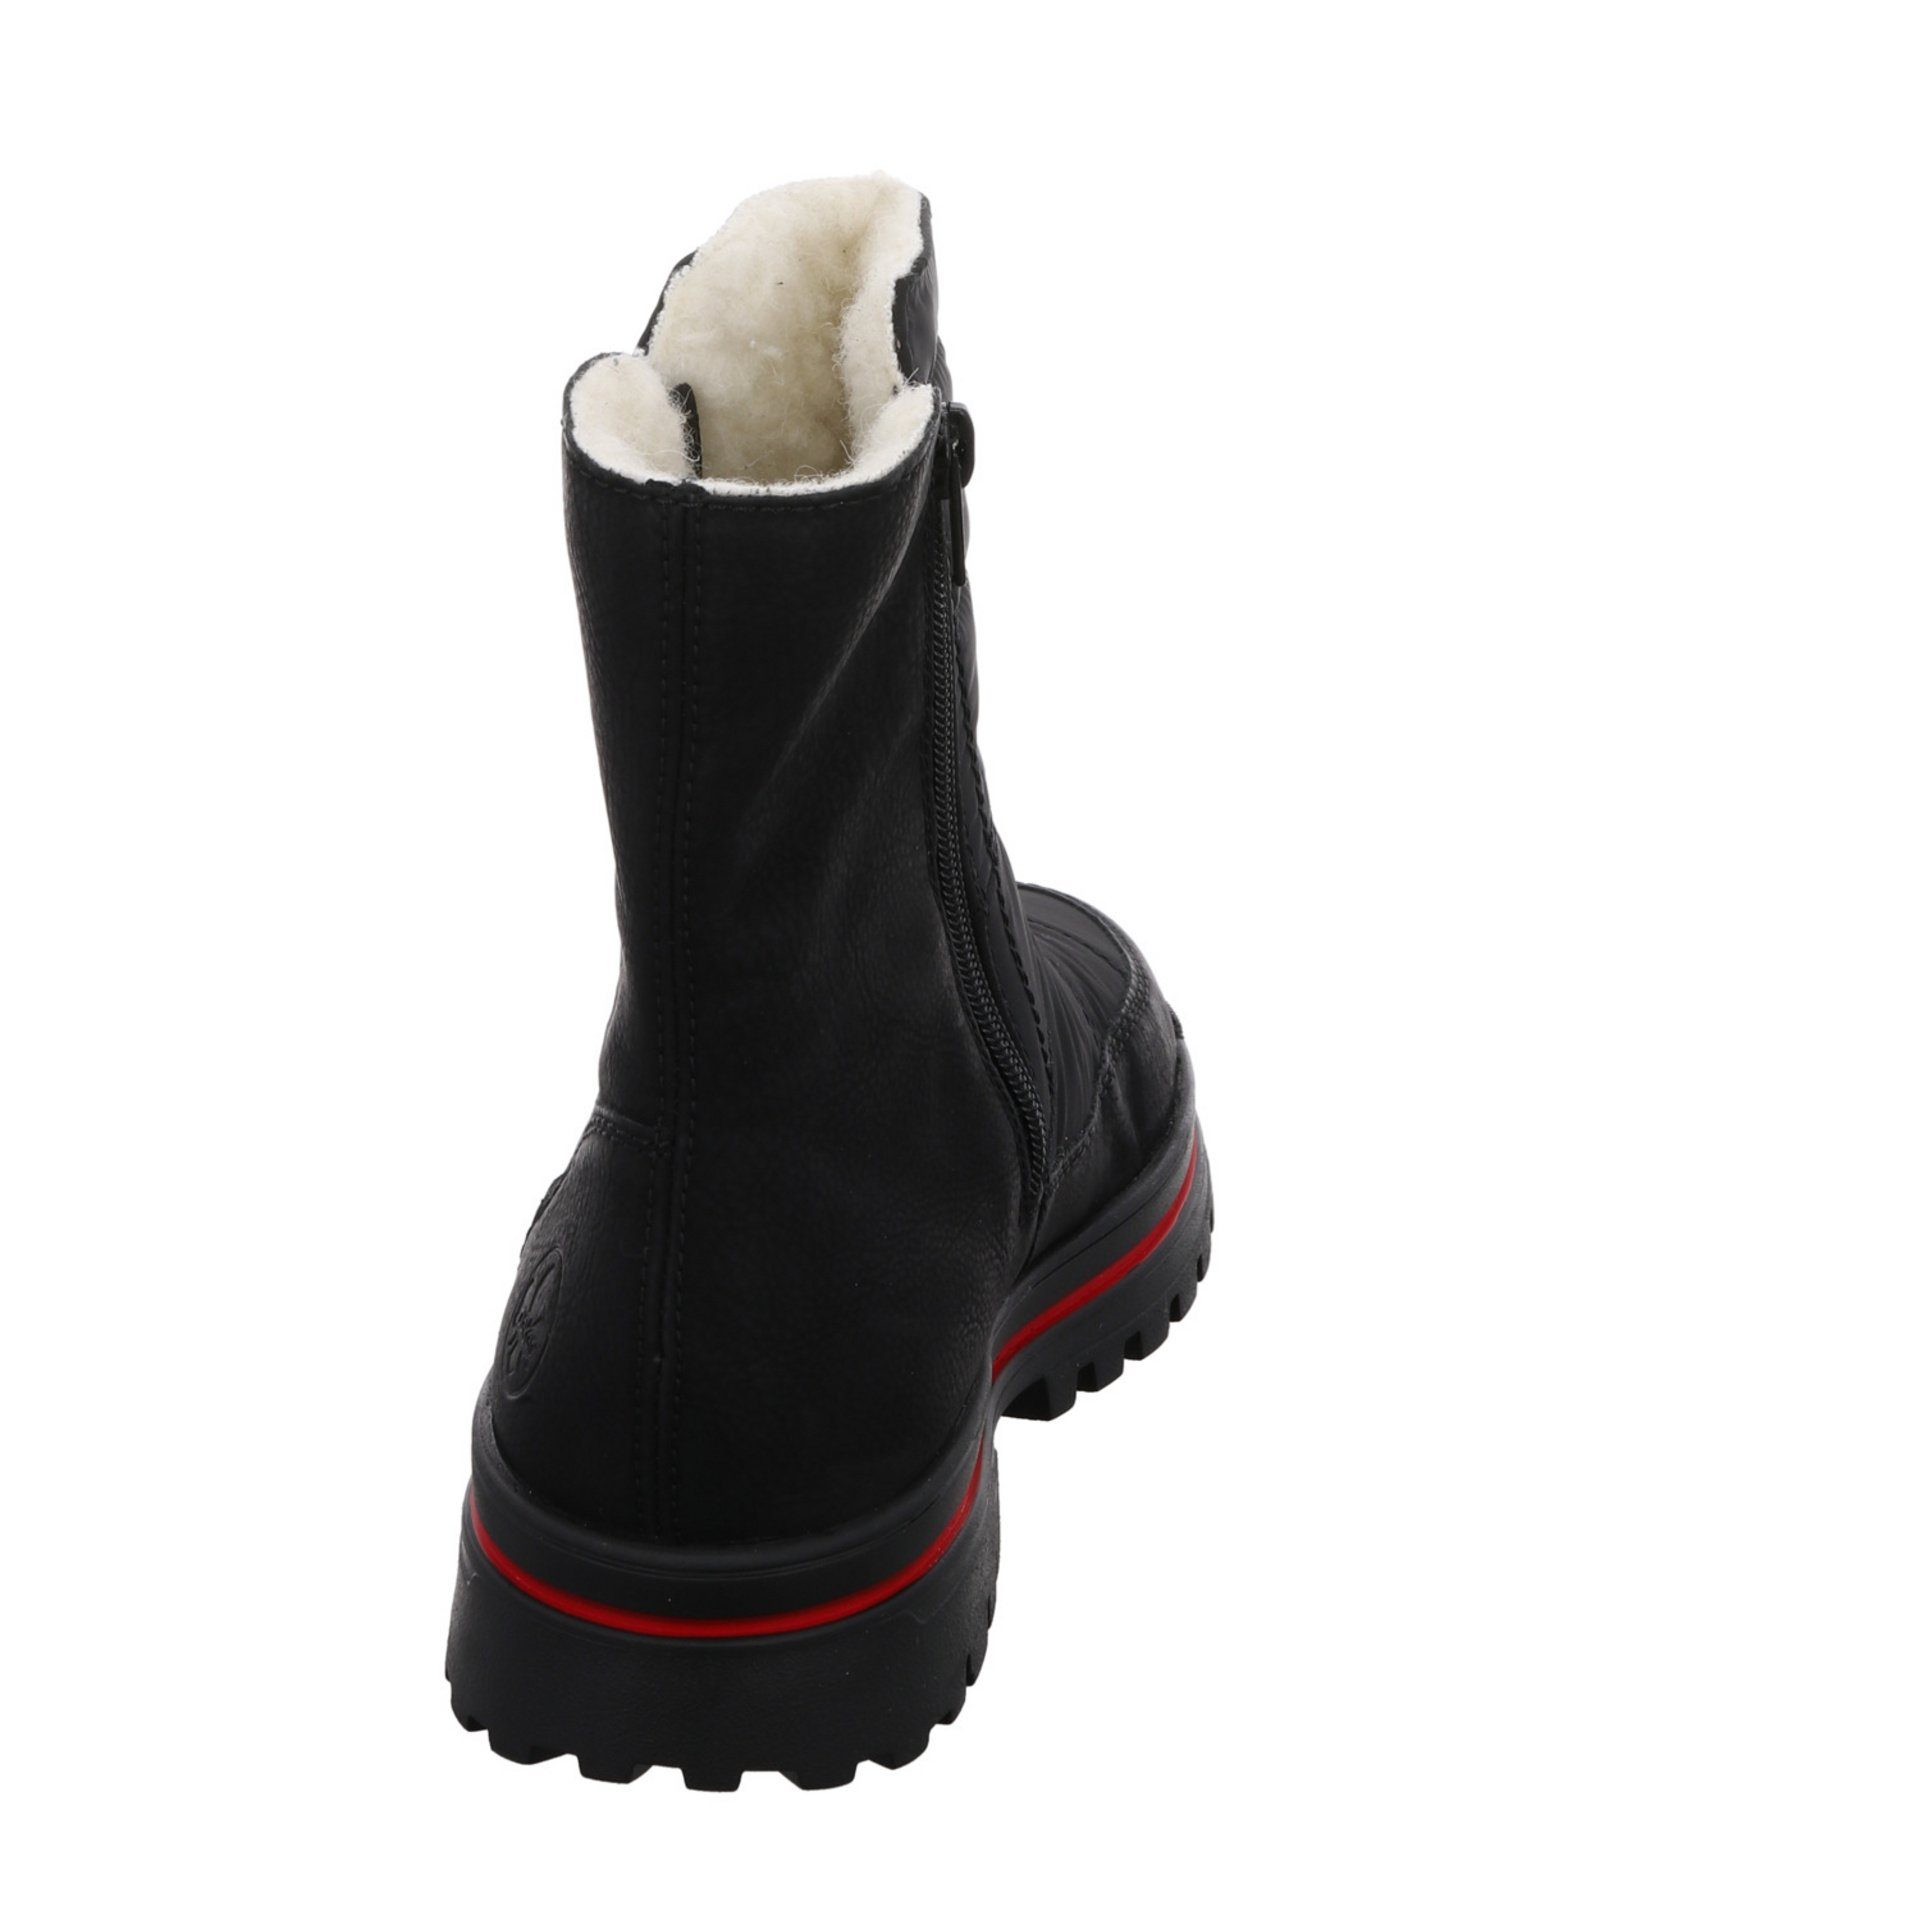 Rieker Damen Stiefel Freizeit Synthetikkombination Schuhe Elegant Stiefel Boots